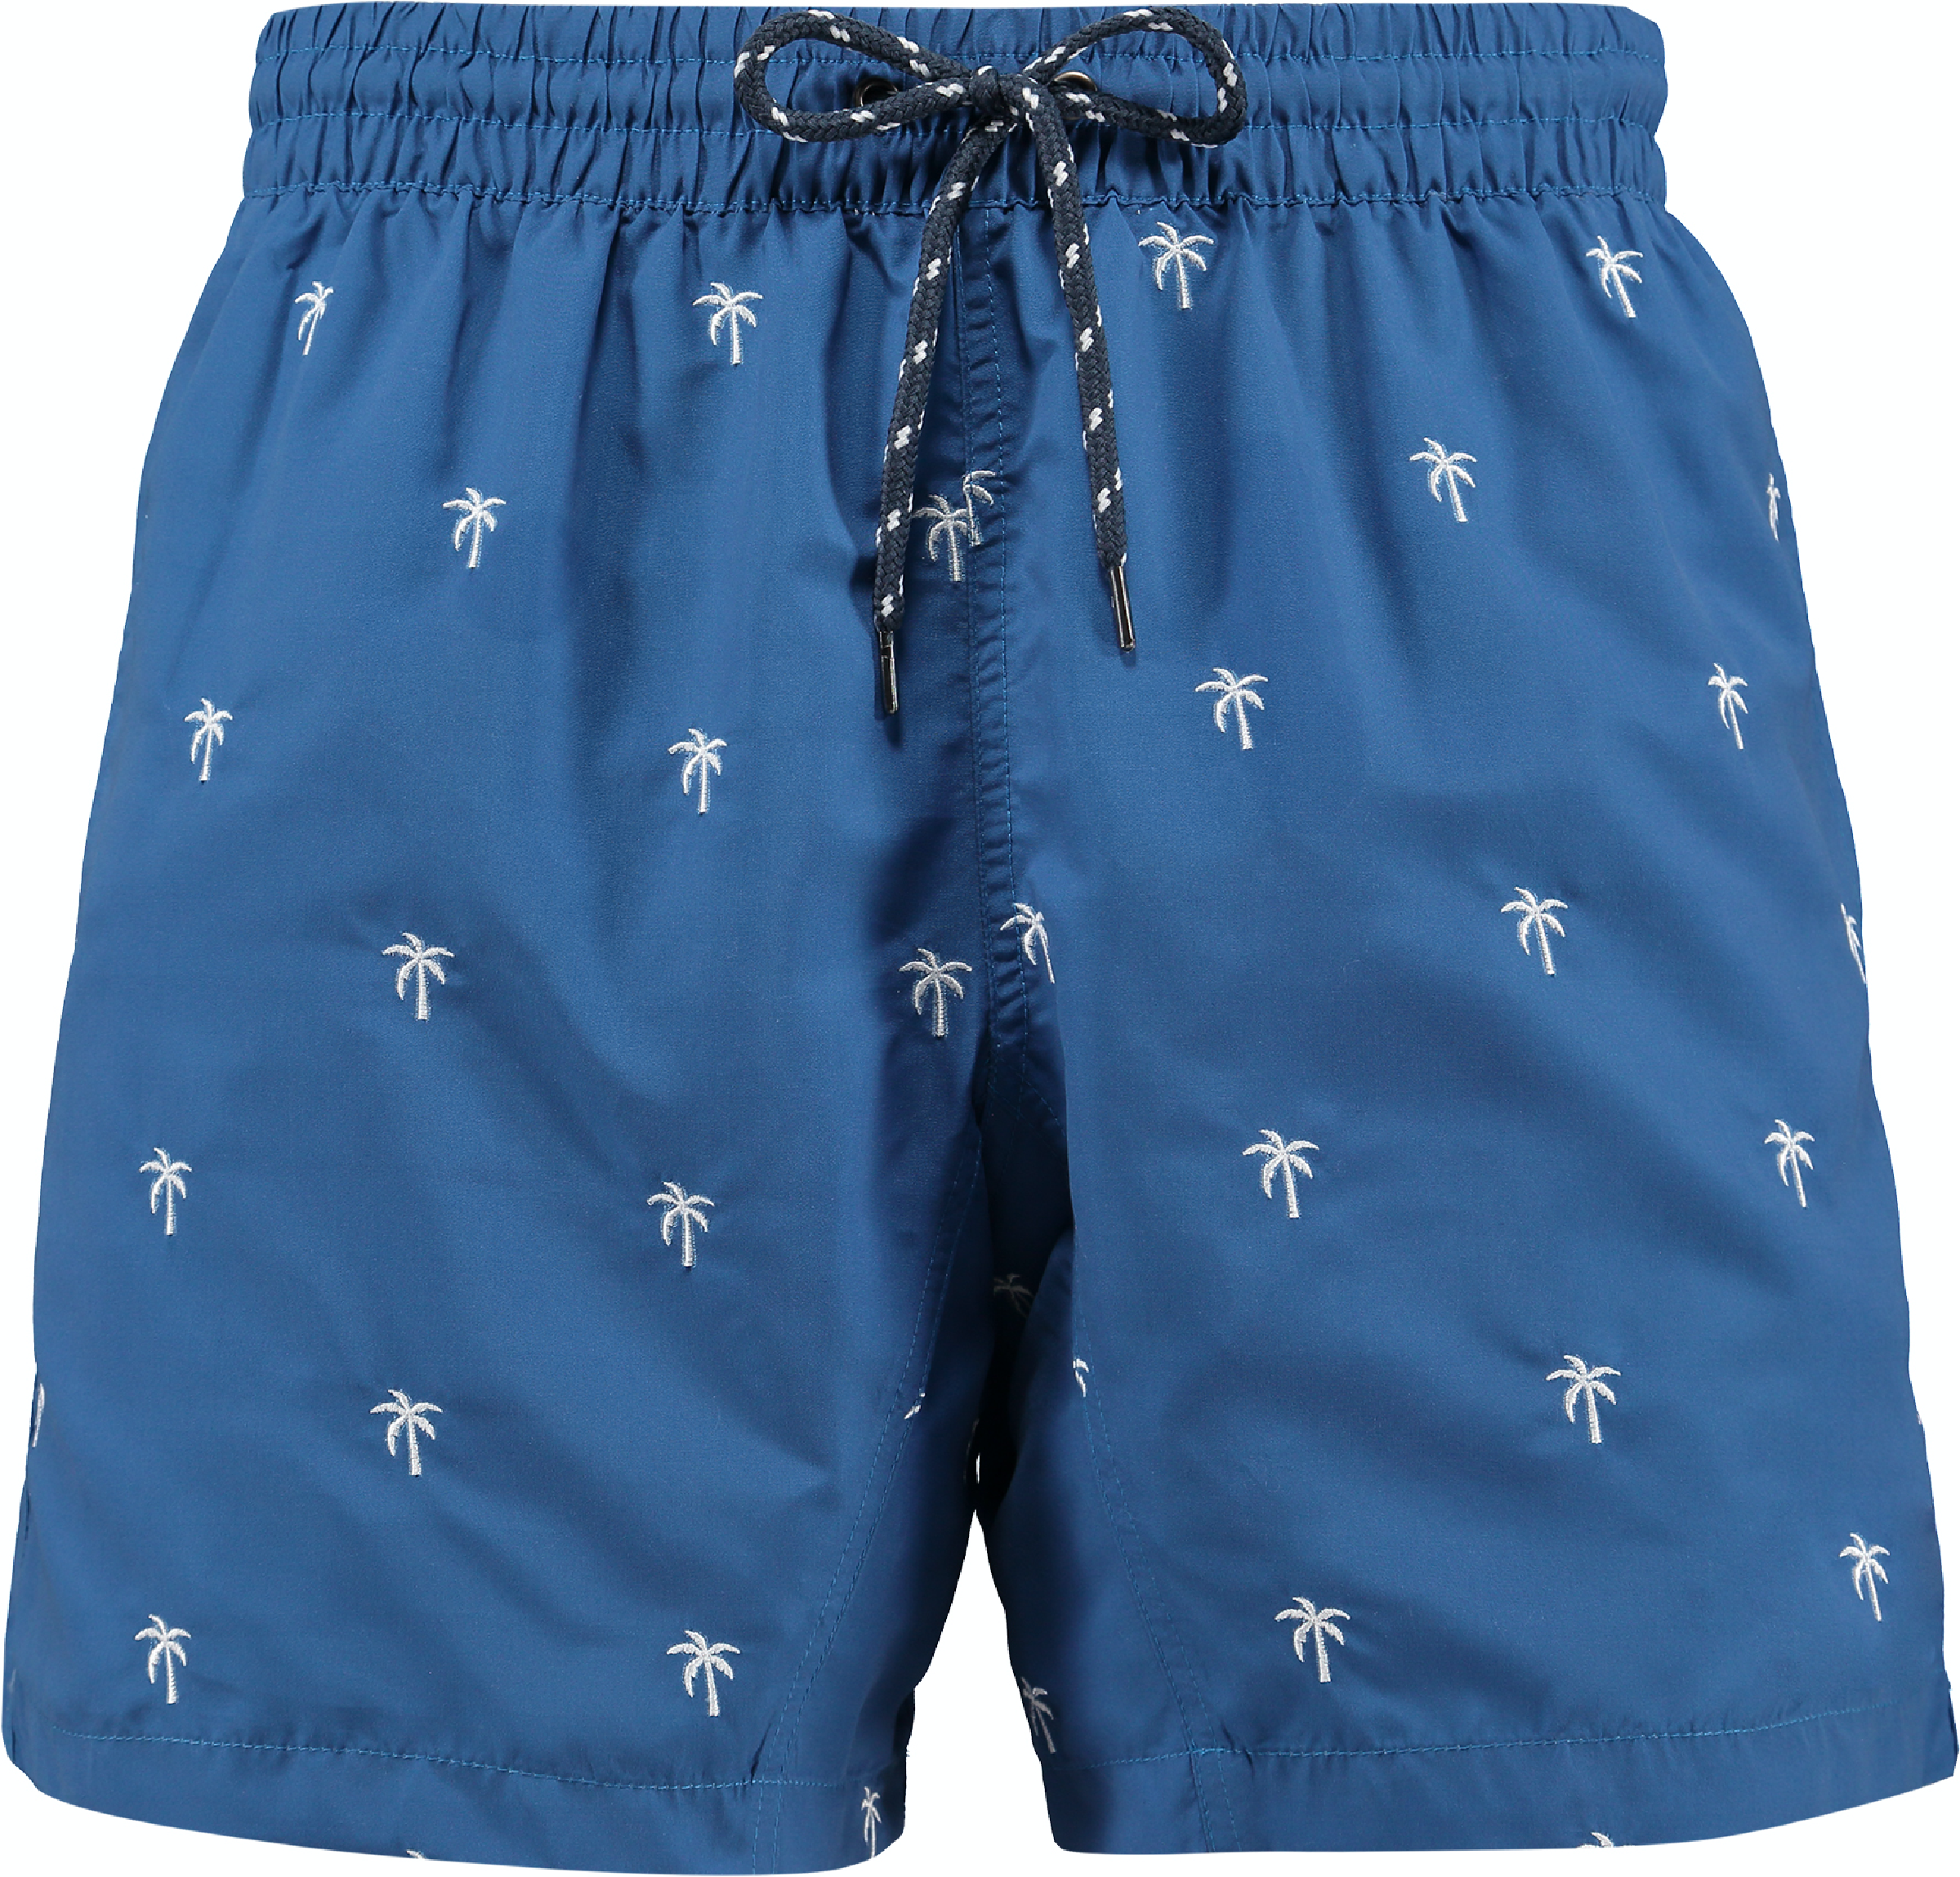 Jongens Arugam Shorts van Bart's in de kleur Royal Blue in maat 176.